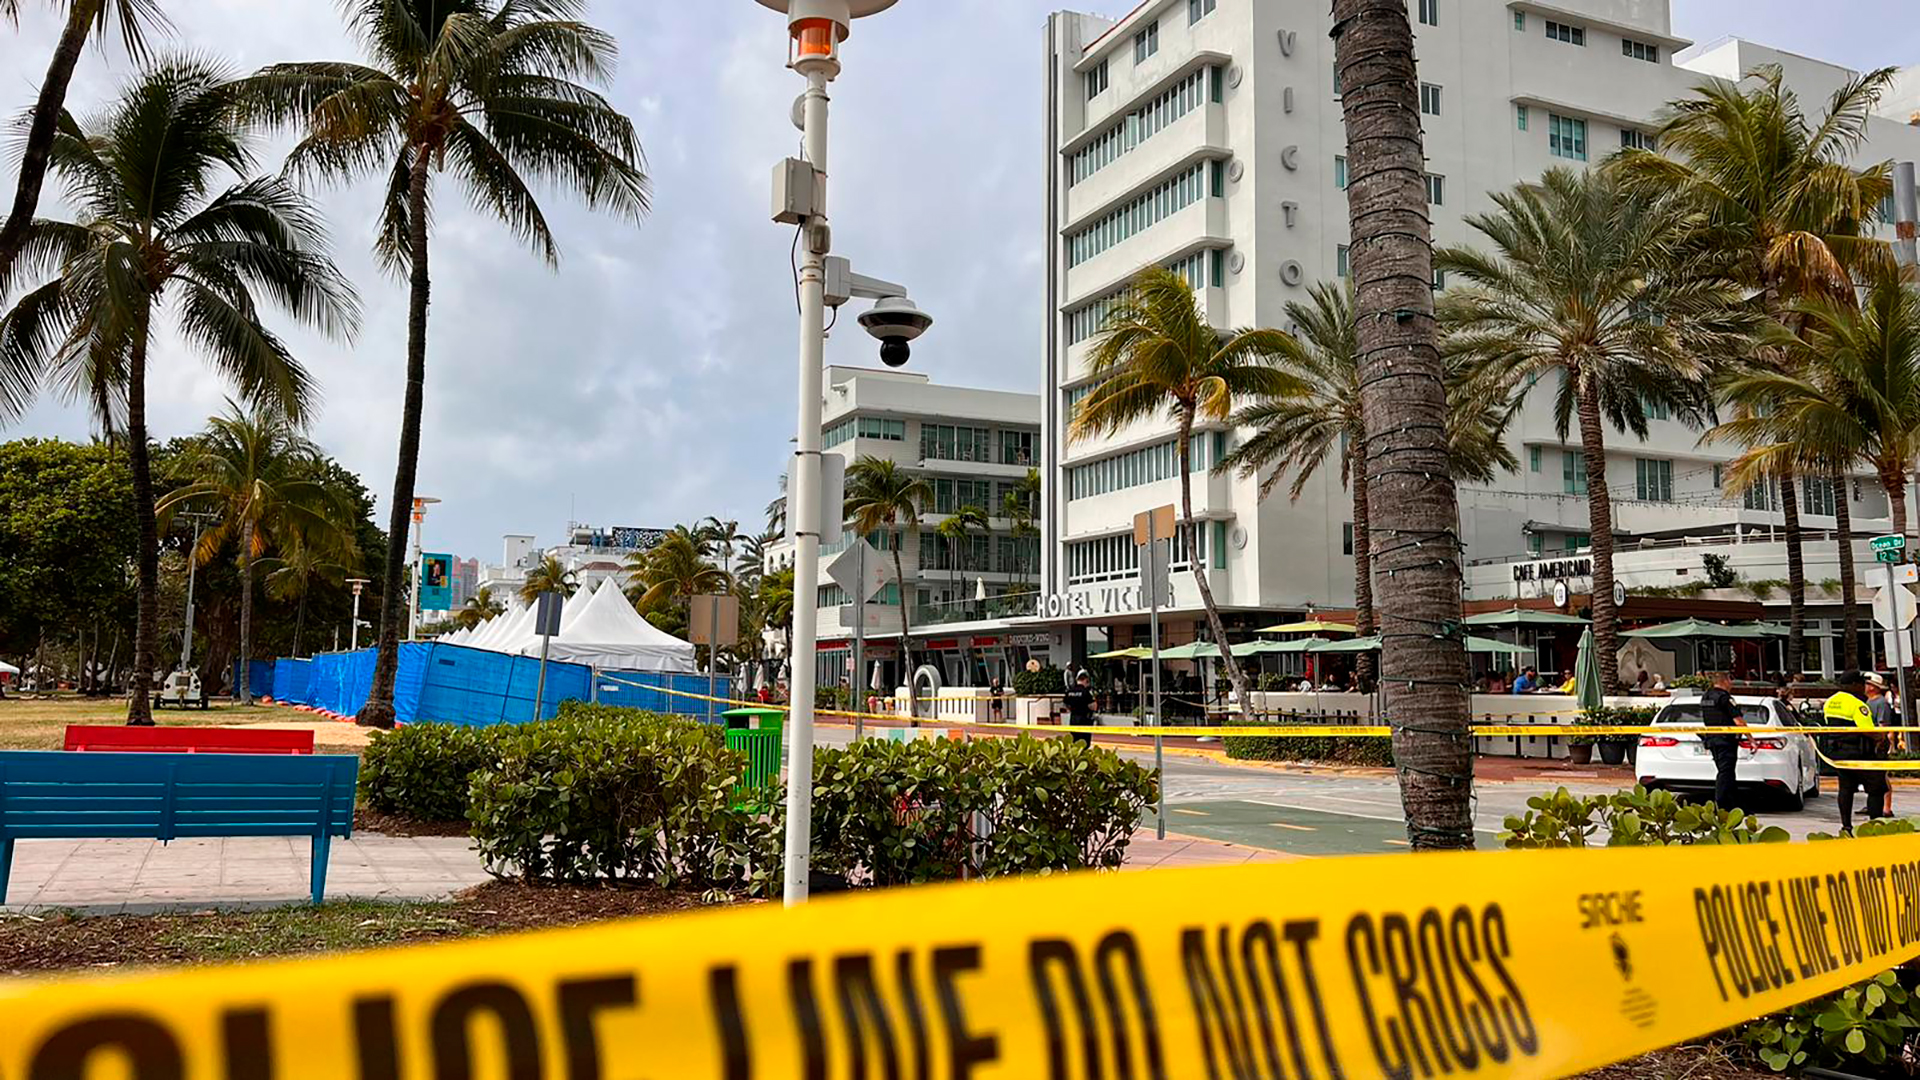 Tiroteos en Miami Beach: las autoridades decretaron el estado de emergencia y ordenaron toque de queda nocturno